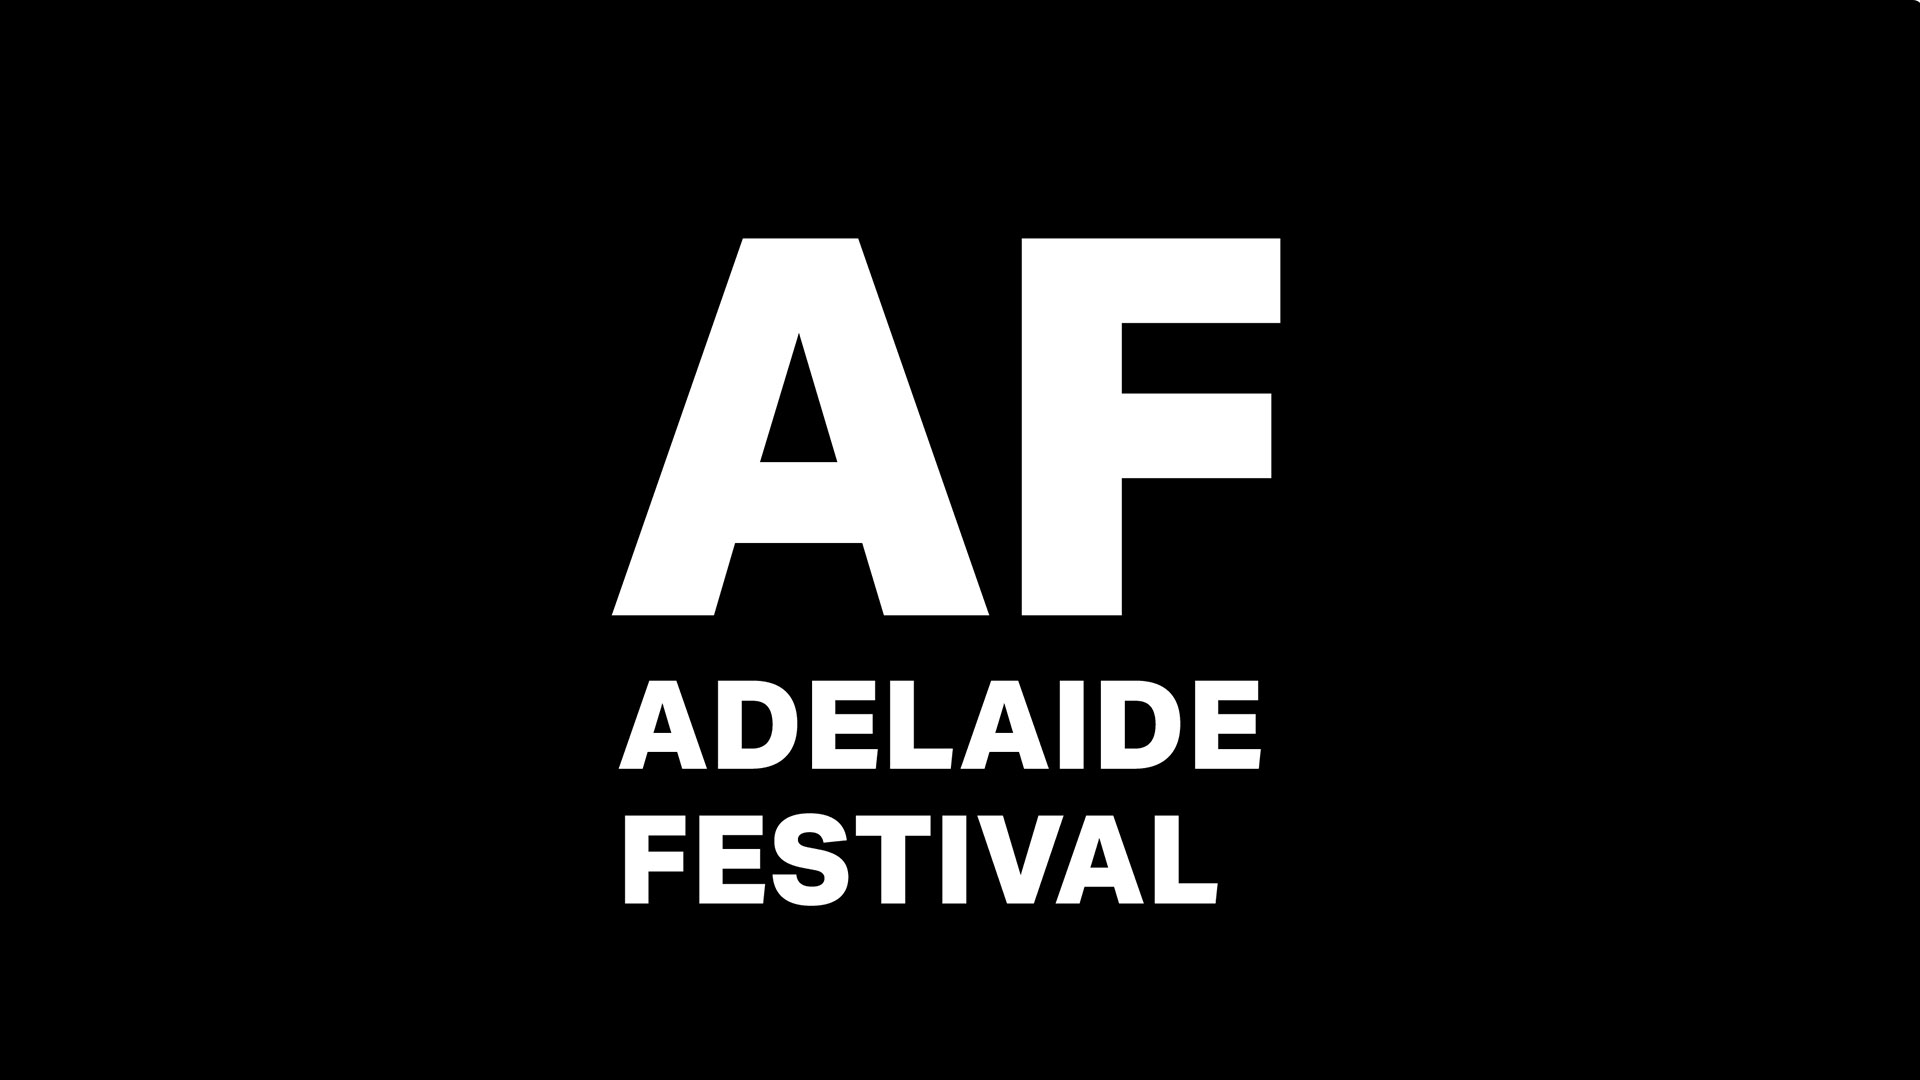 www.adelaidefestival.com.au